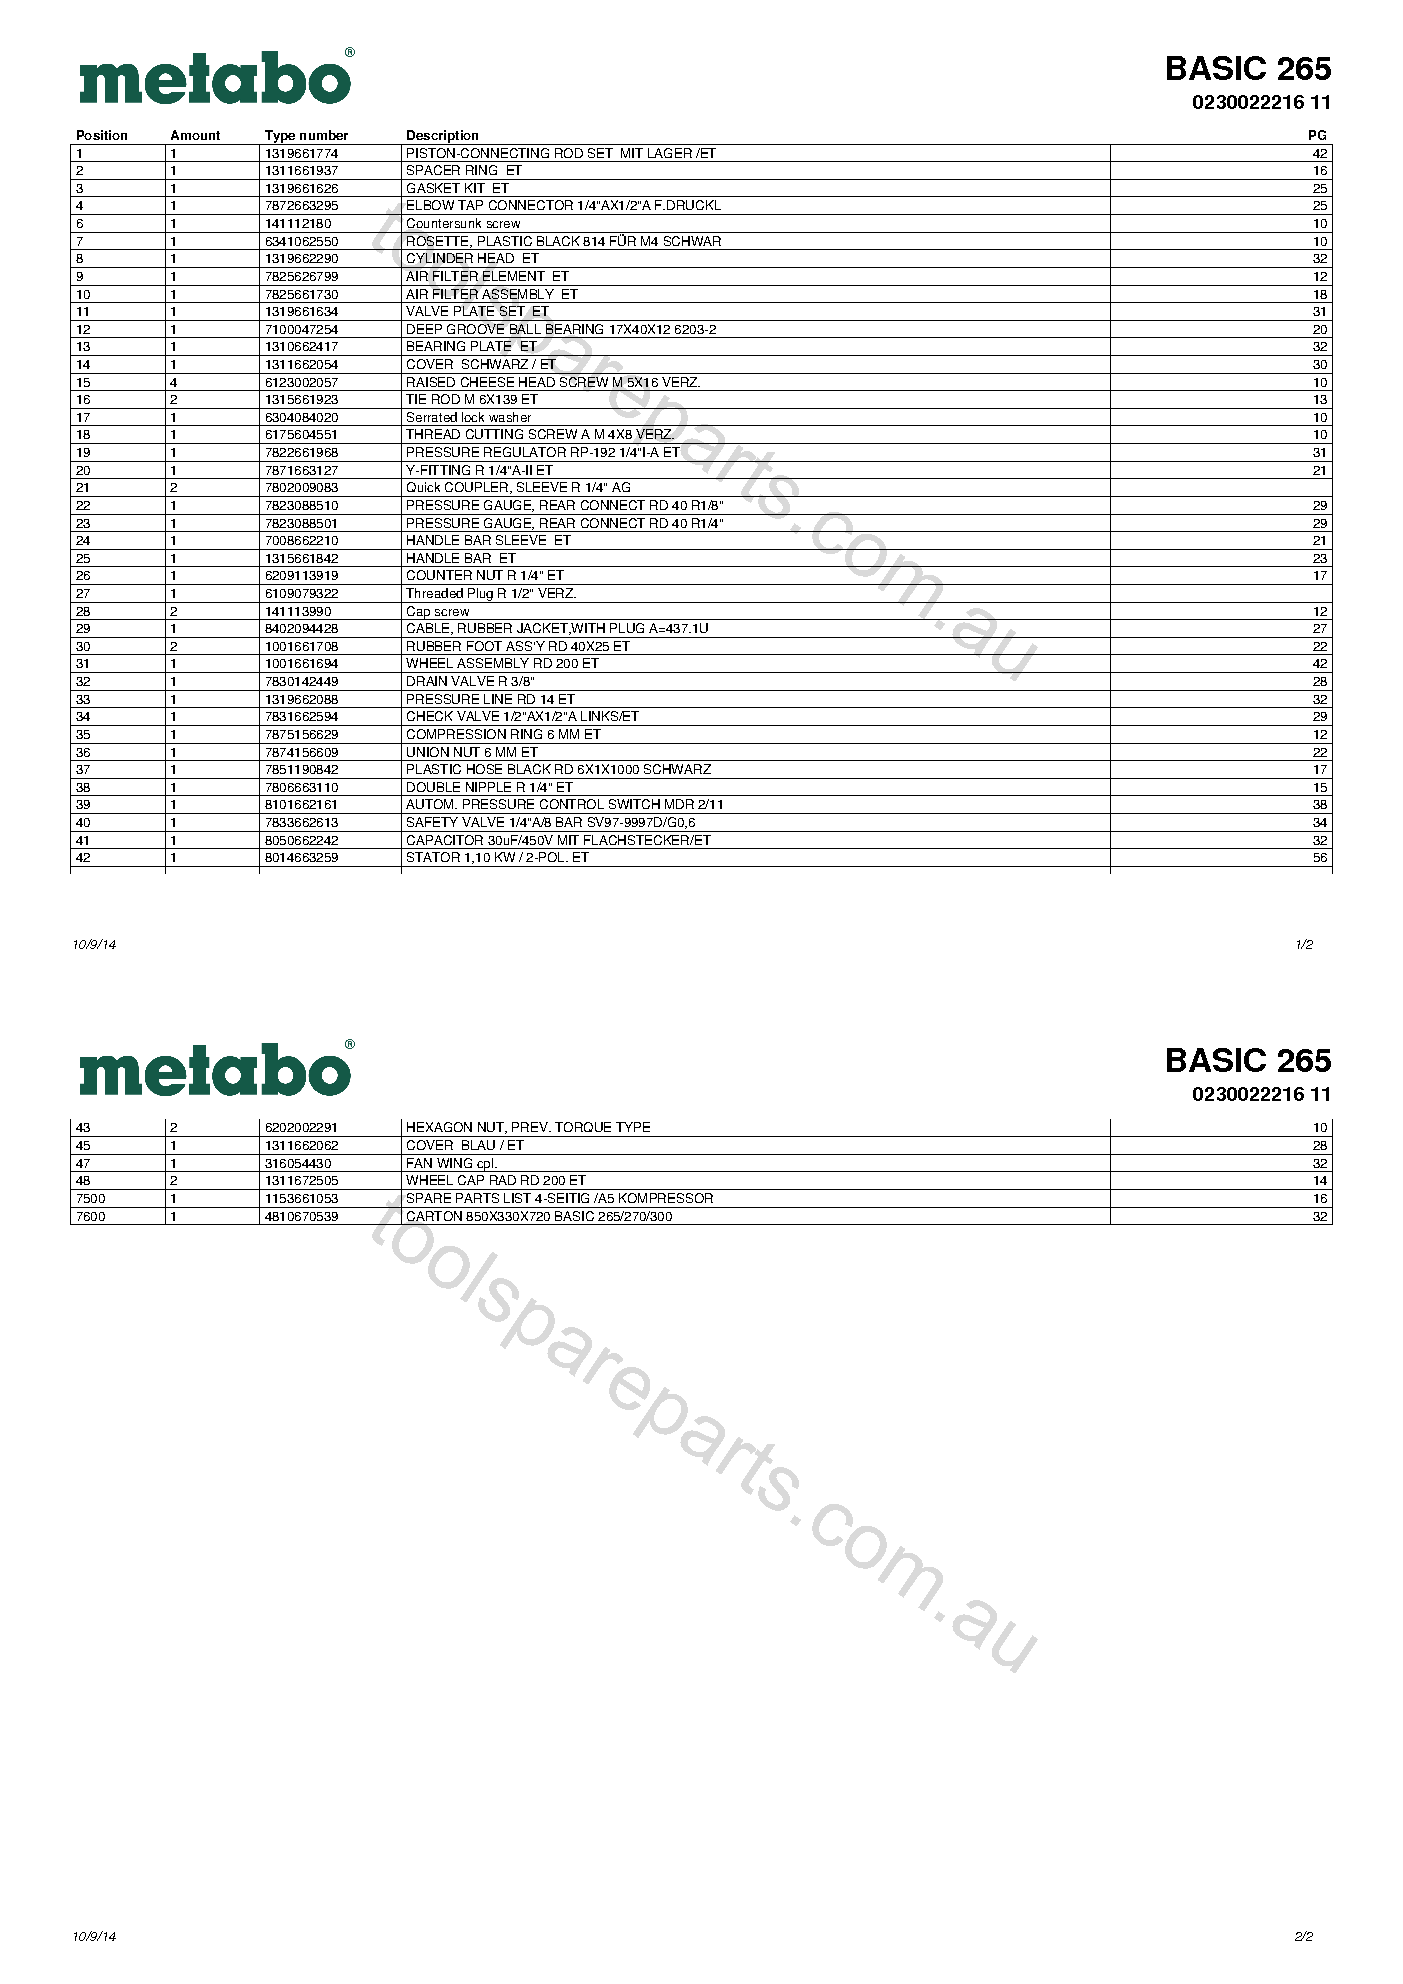 Metabo BASIC 265 0230022216 11  Diagram 1